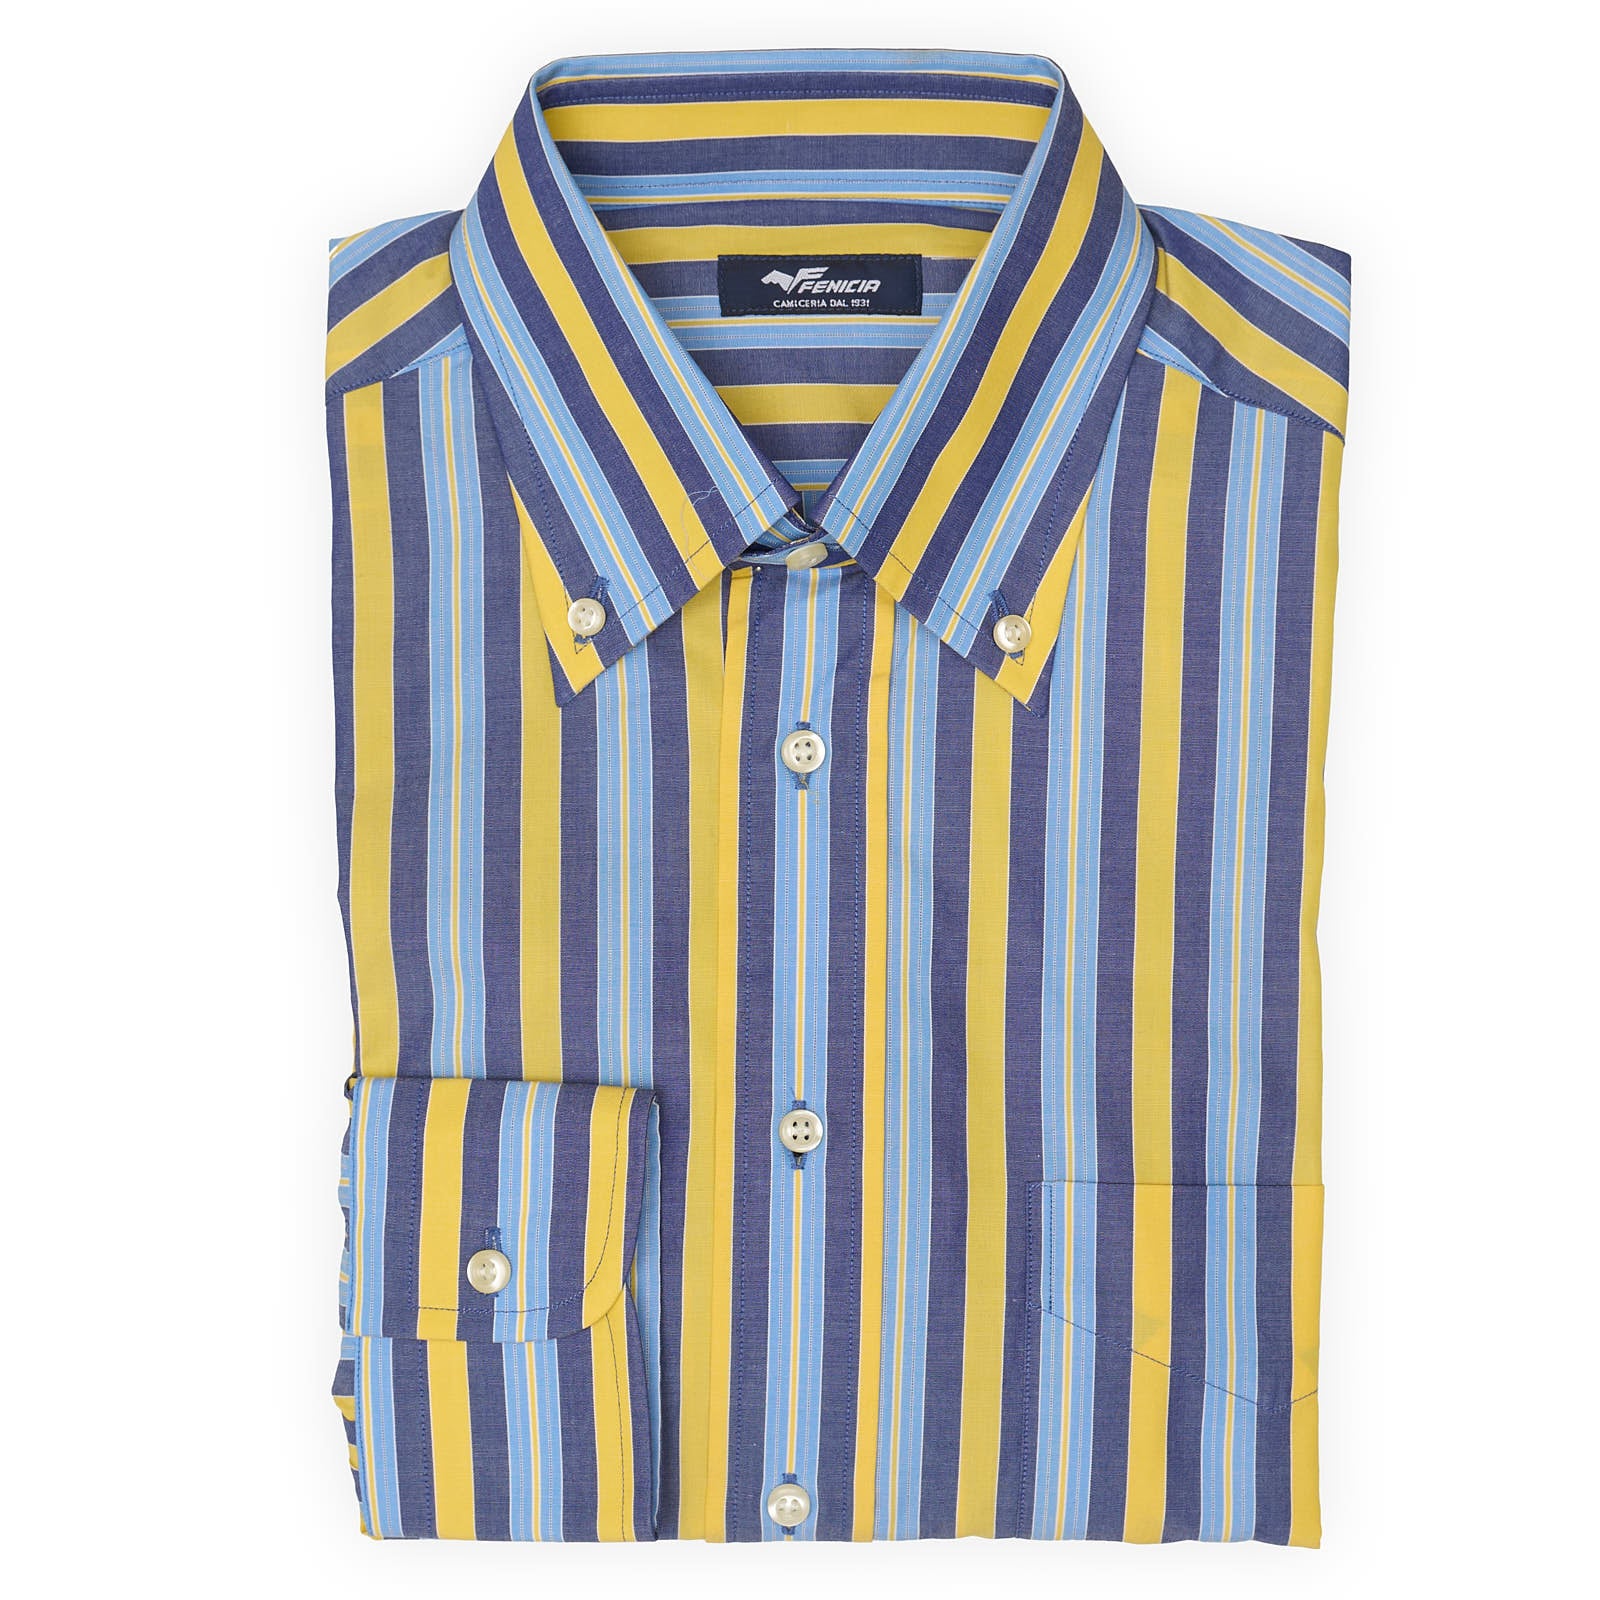 FENICIA Multicolor Striped Poplin Cotton Shirt EU S NEW US 15